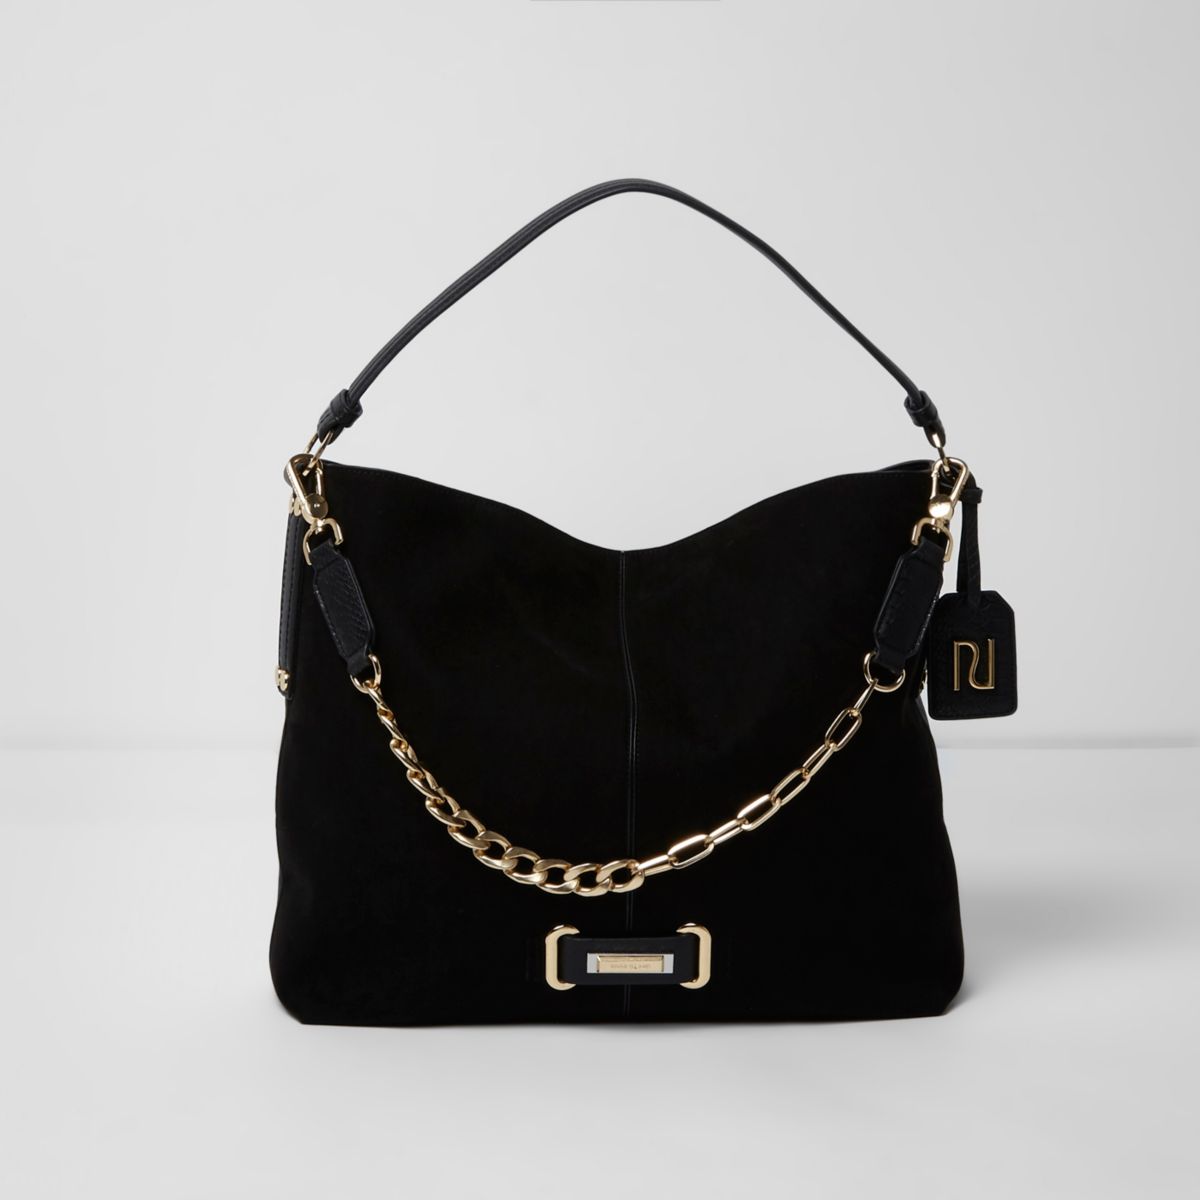 Black chain front underarm slouch bag - Shoulder Bags - Bags & Purses - women